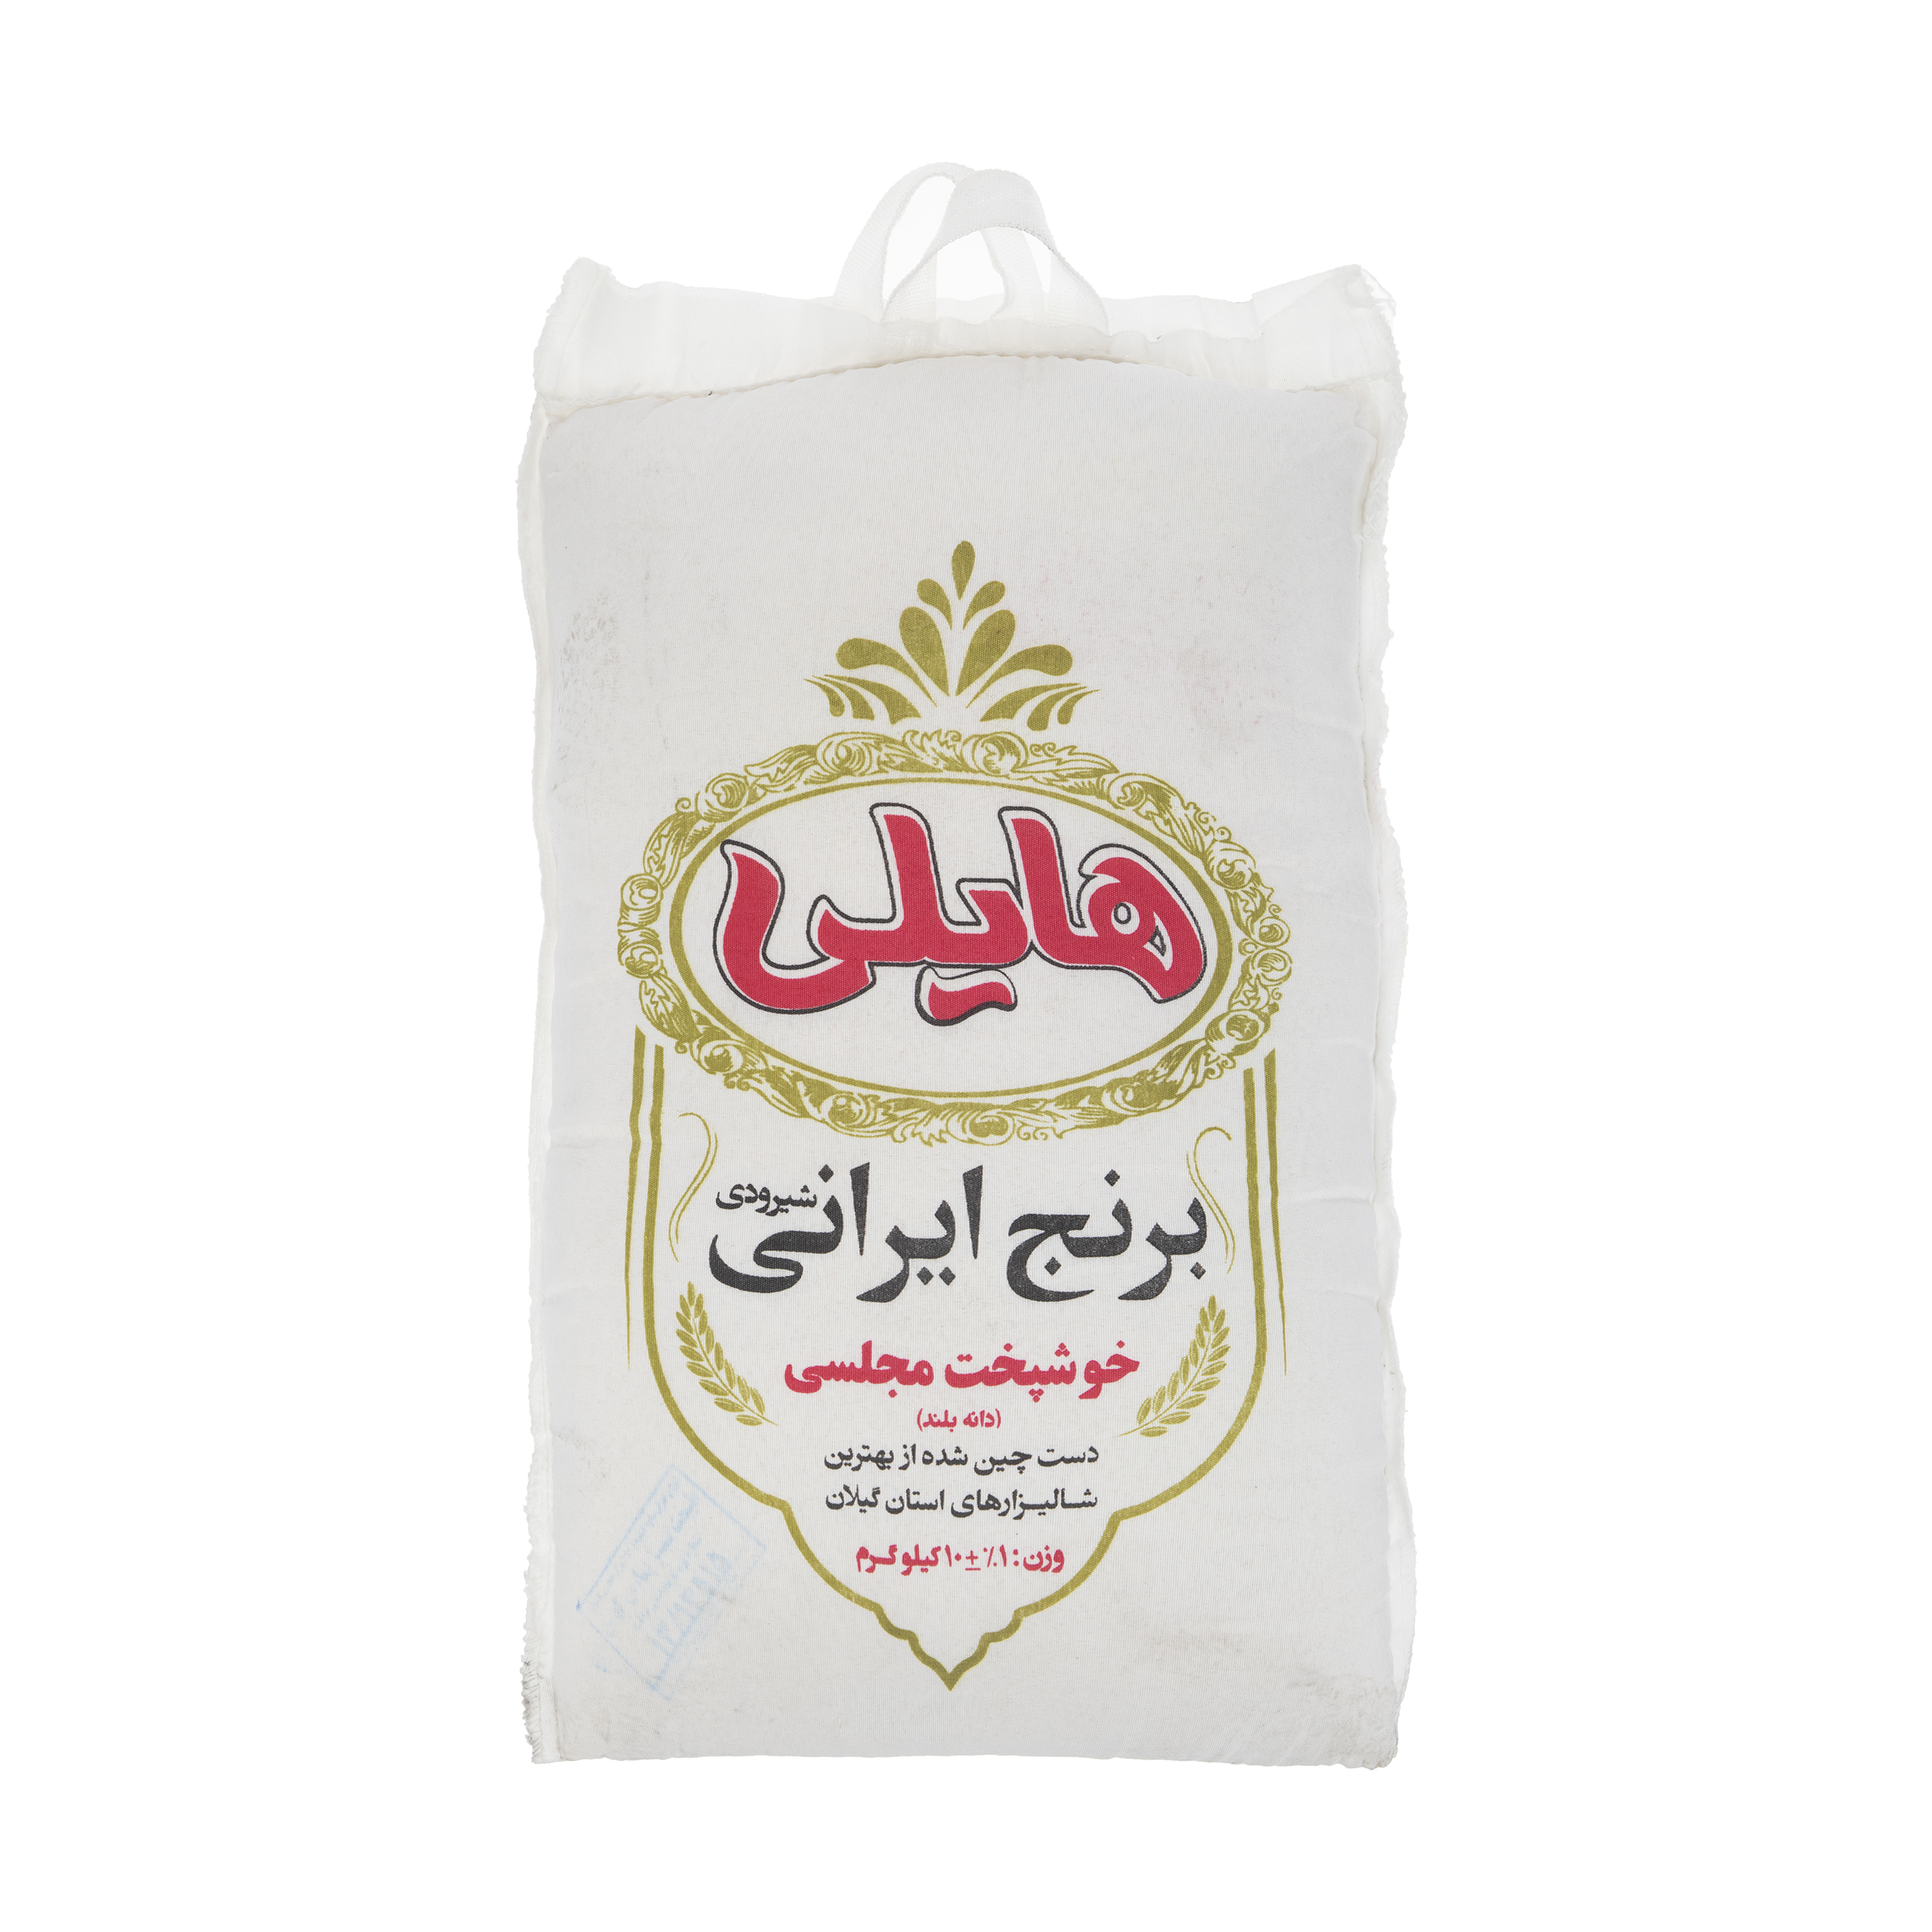 نکته خرید - قیمت روز برنج شیرودی هایلی - 10 کیلوگرم خرید